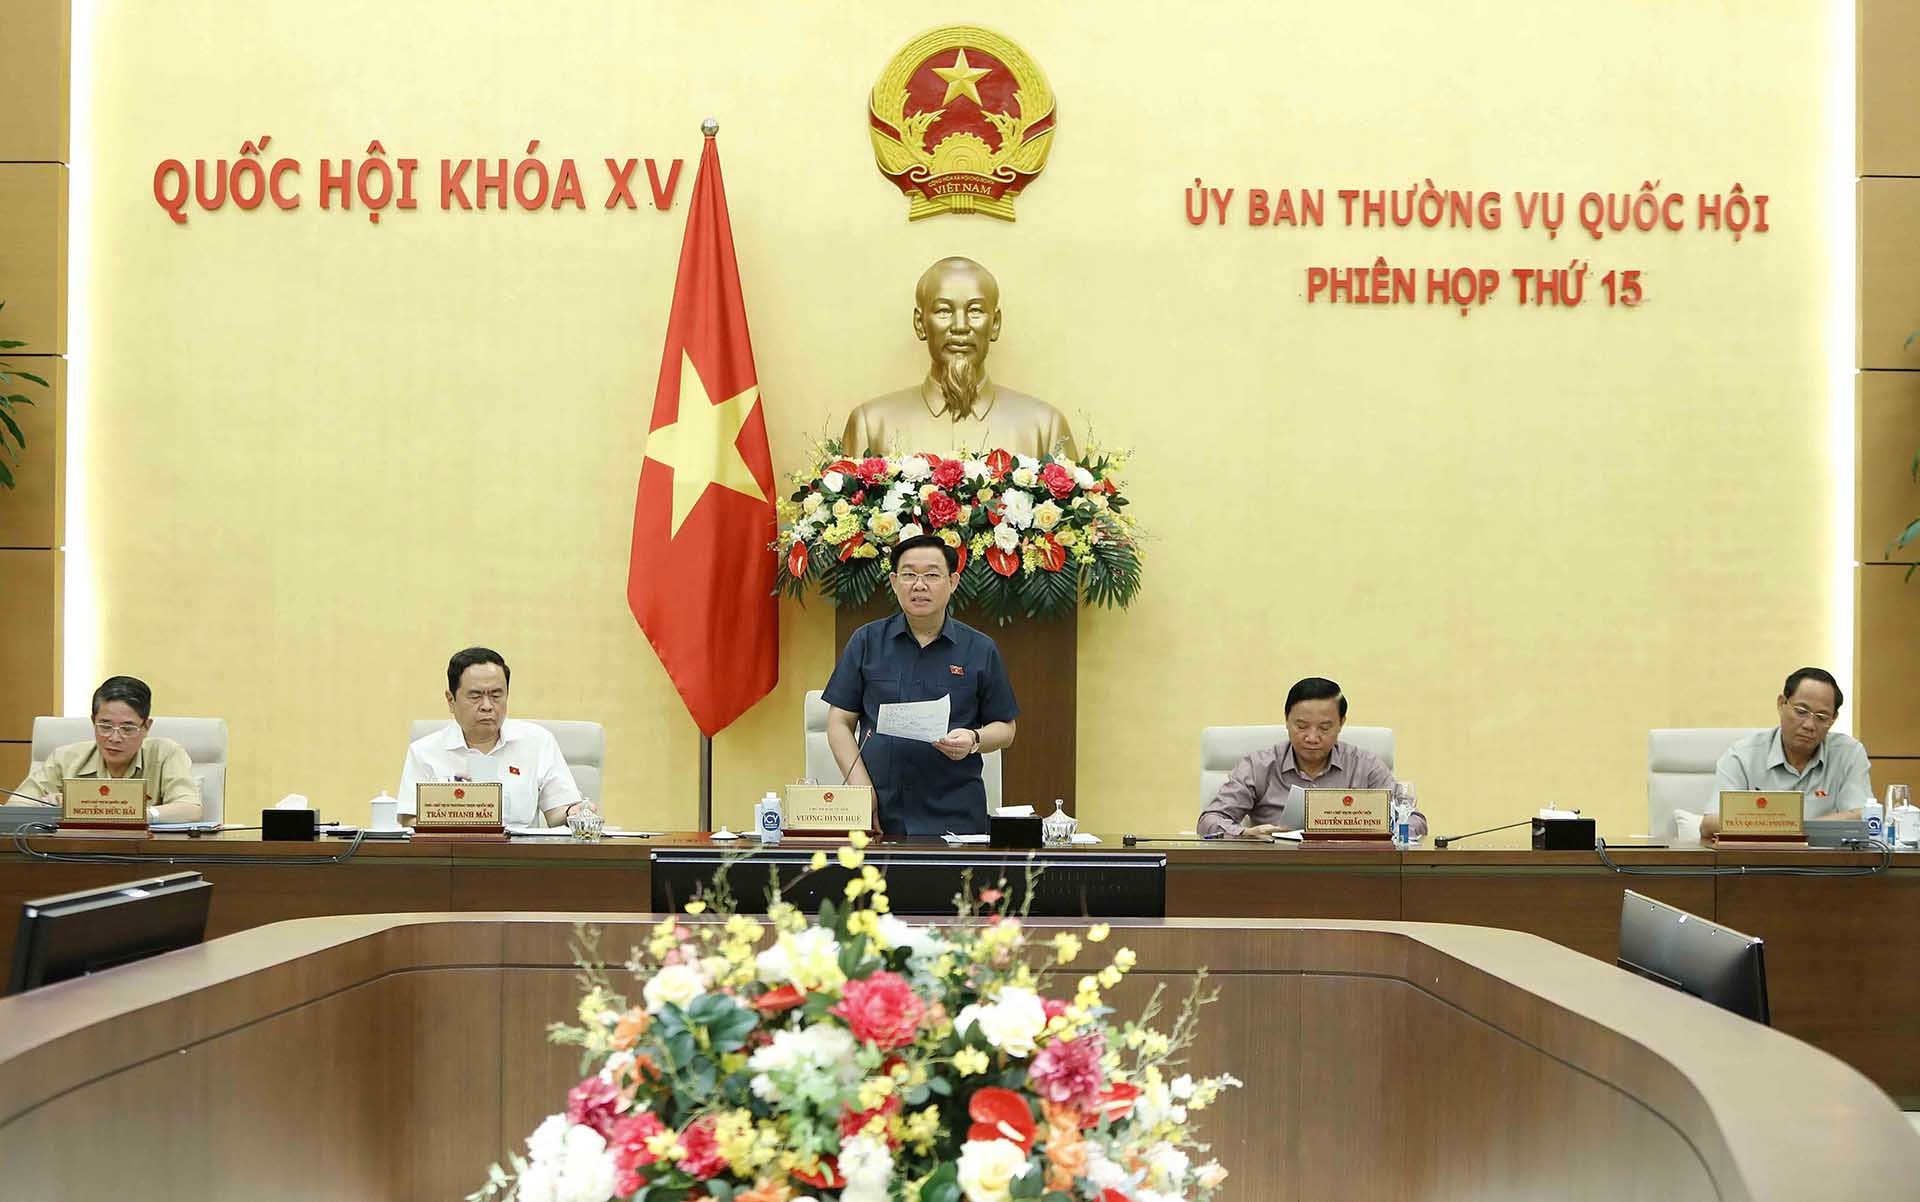 Bế mạc Phiên họp thứ 15, Ủy ban Thường vụ Quốc hội khóa XV | Chính trị | Vietnam+ (VietnamPlus)